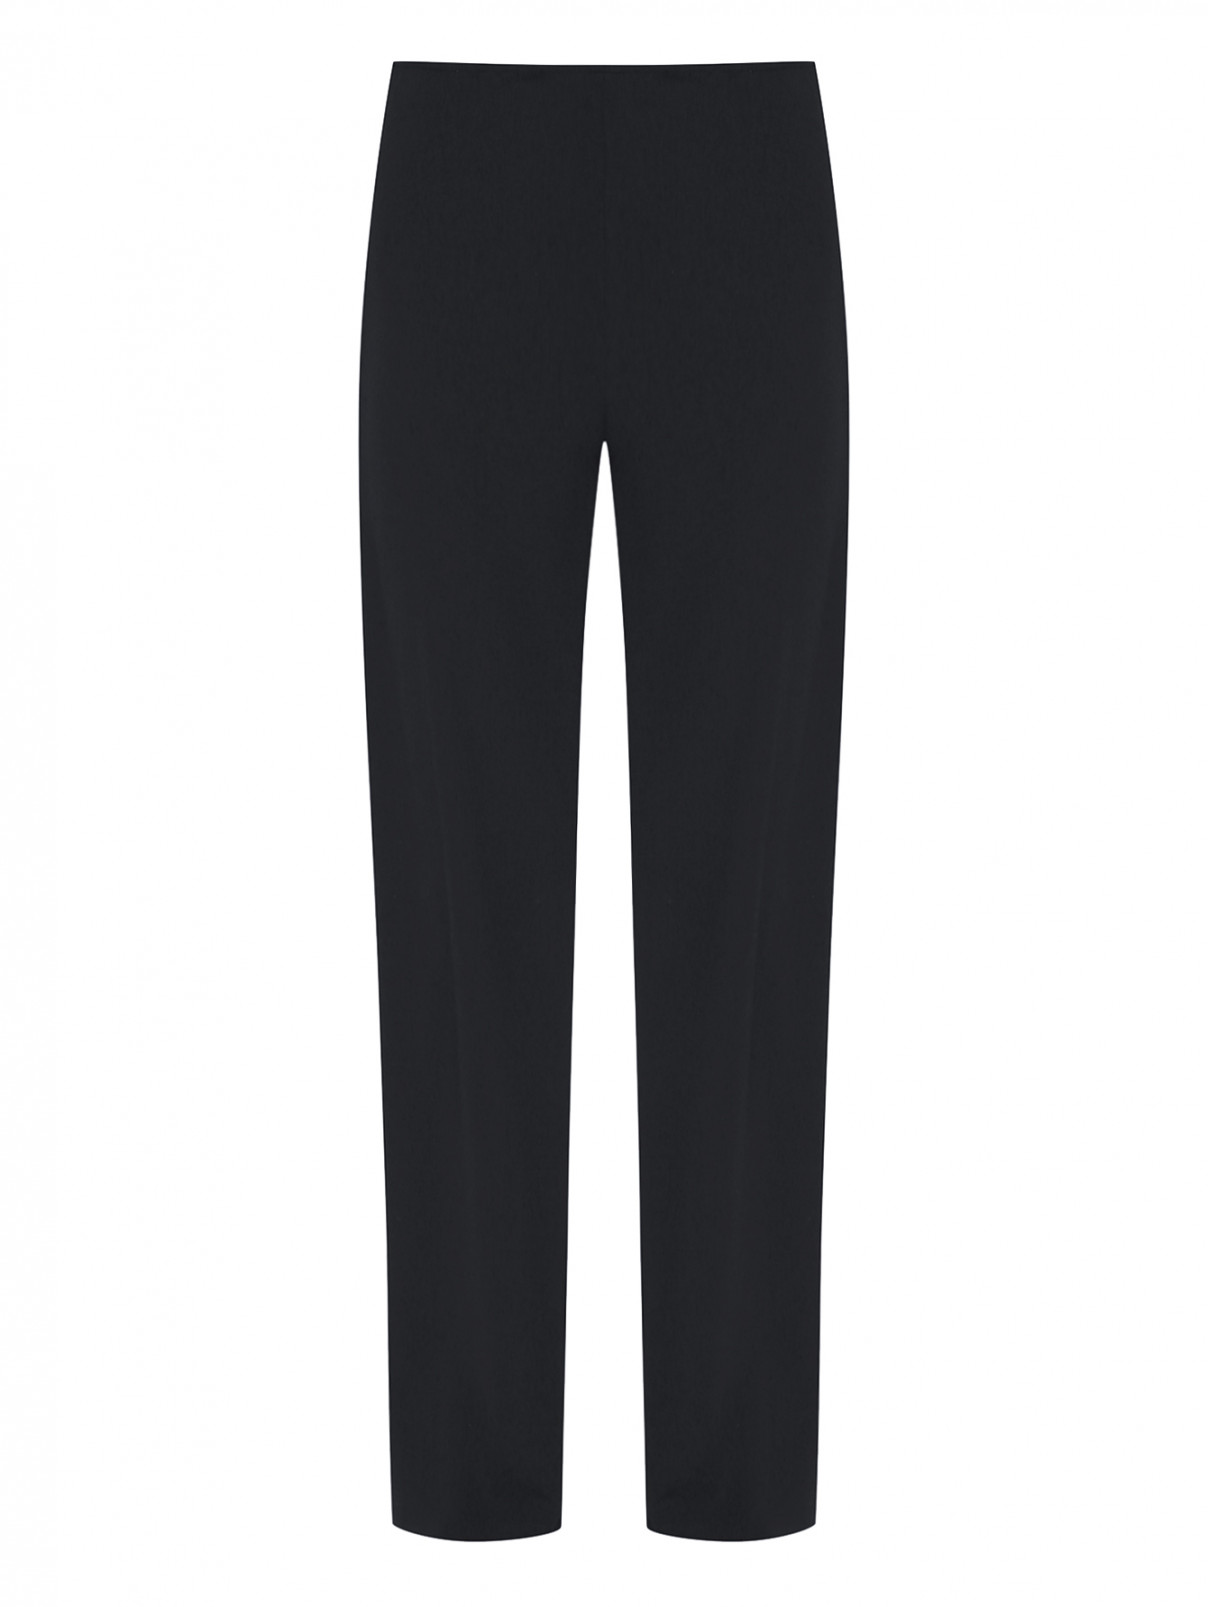 Широкие брюки на молнии Luisa Spagnoli  –  Общий вид  – Цвет:  Черный